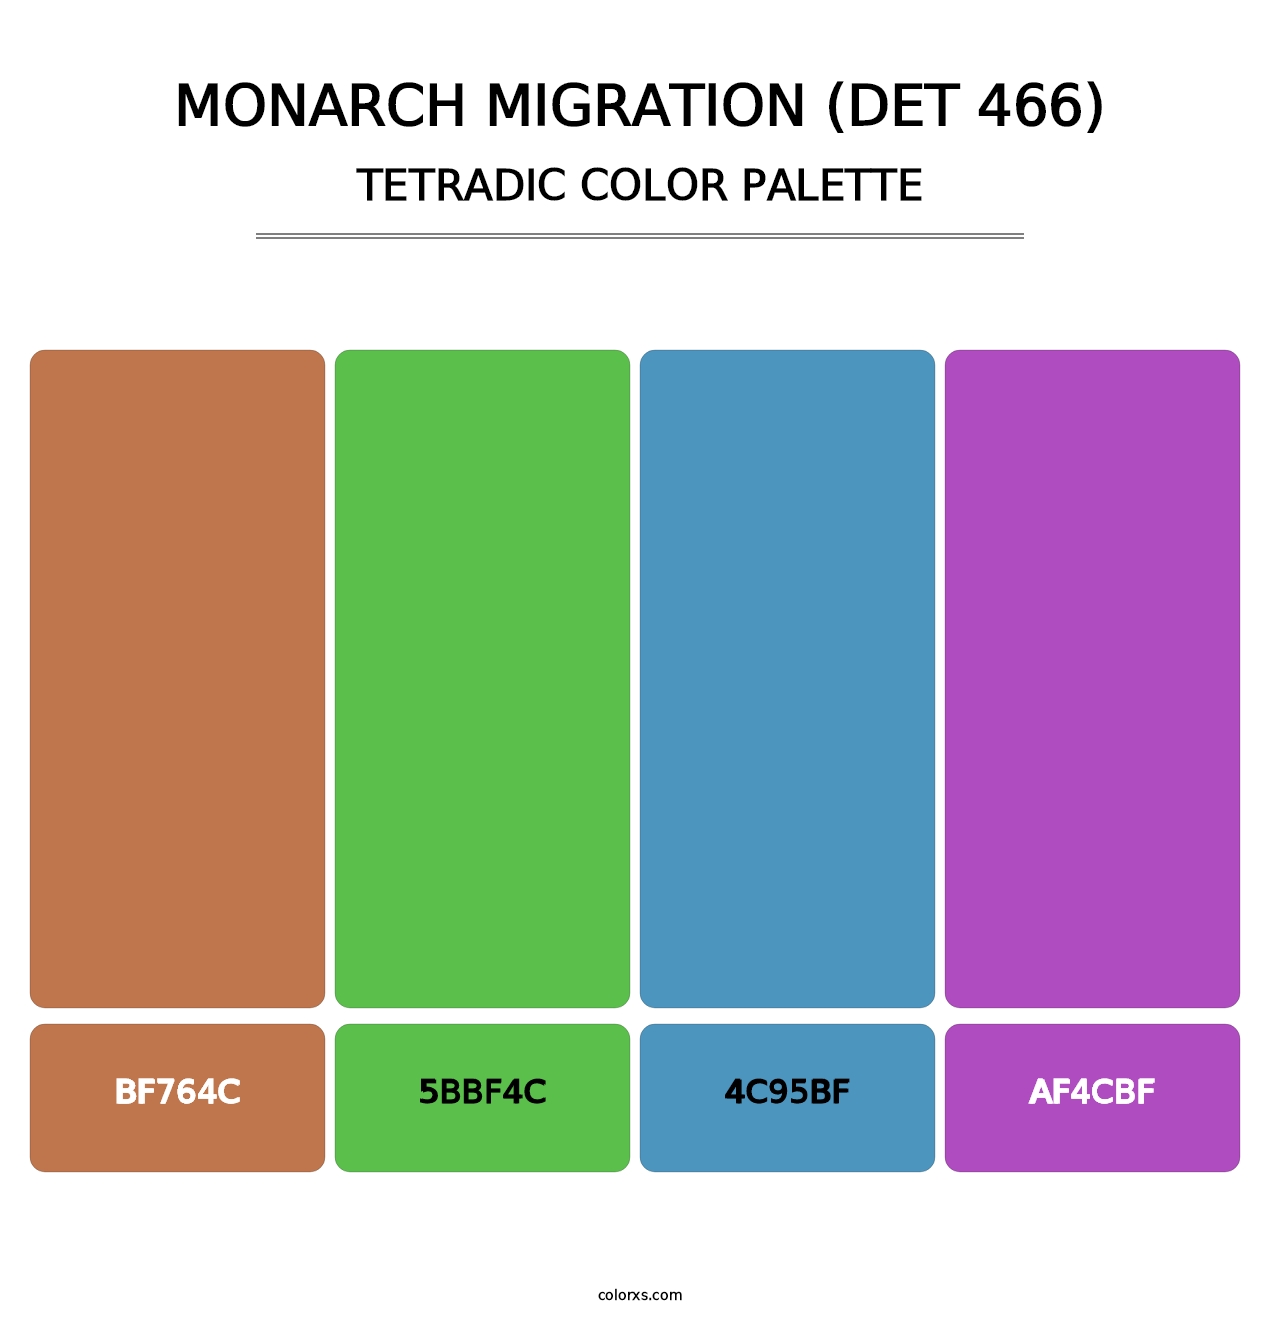 Monarch Migration (DET 466) - Tetradic Color Palette